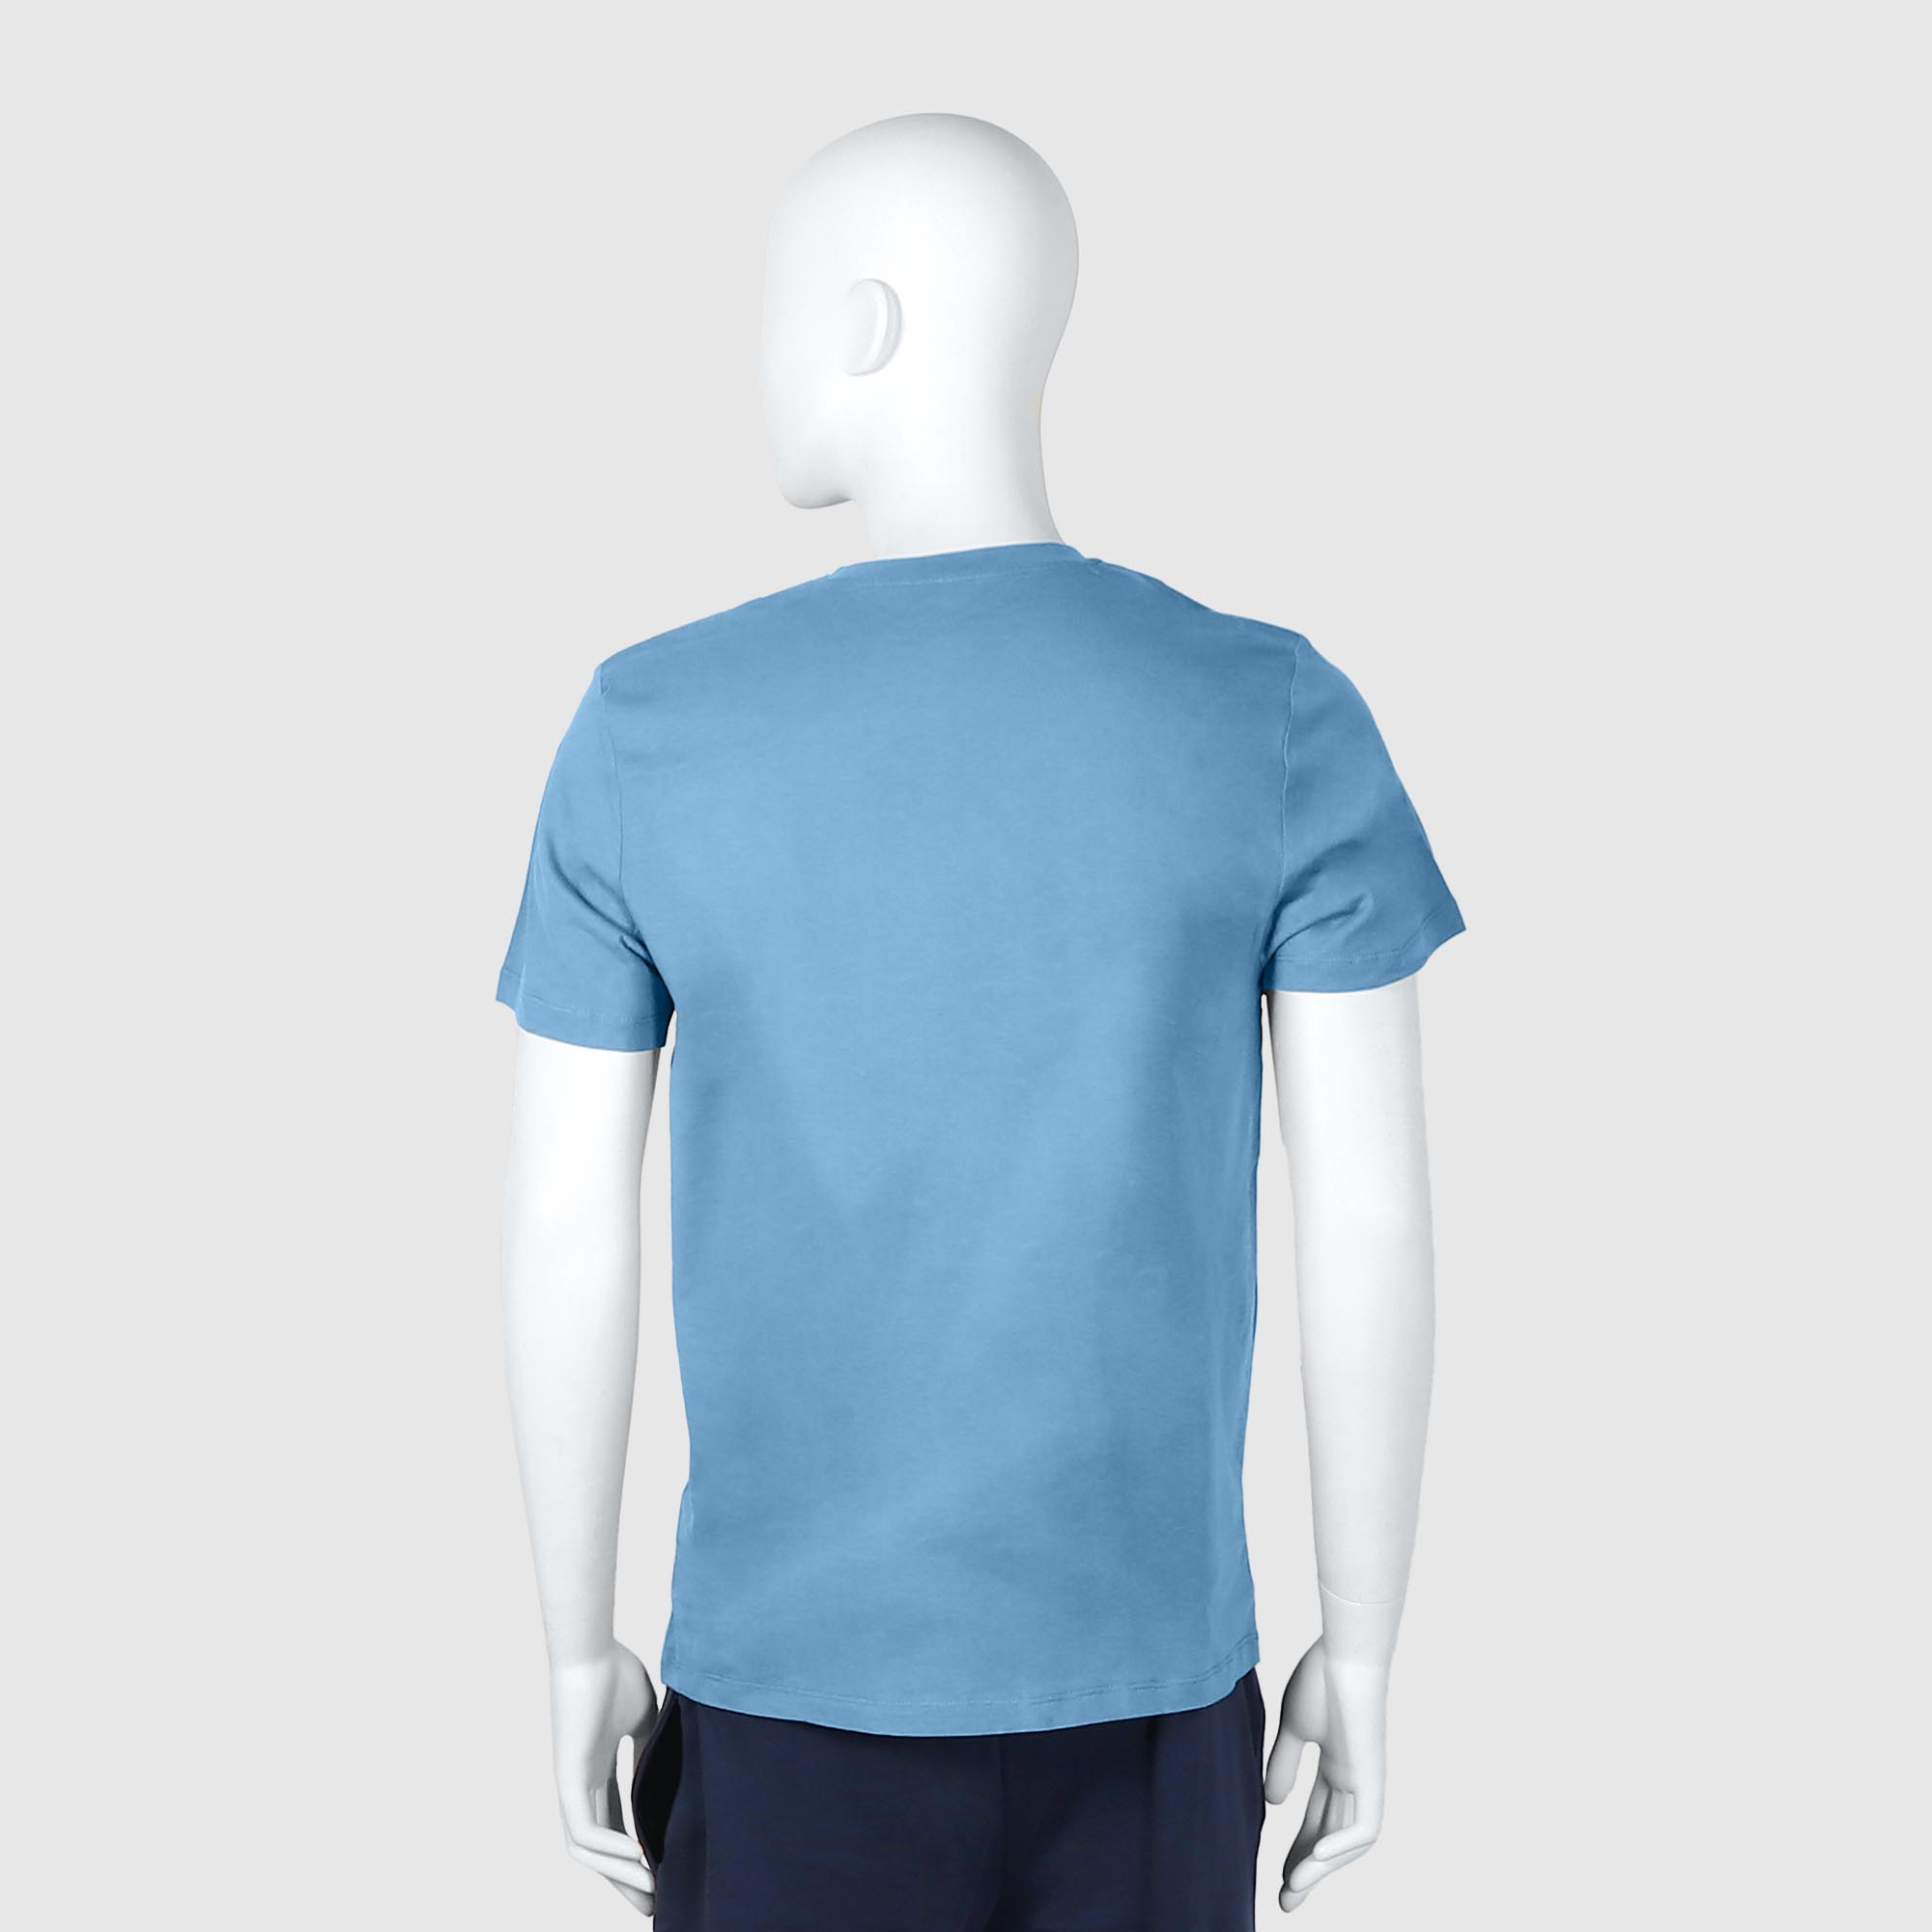 Мужская футболка Diva Teks голубая (DTD-03), цвет голубой, размер 52-54 - фото 2